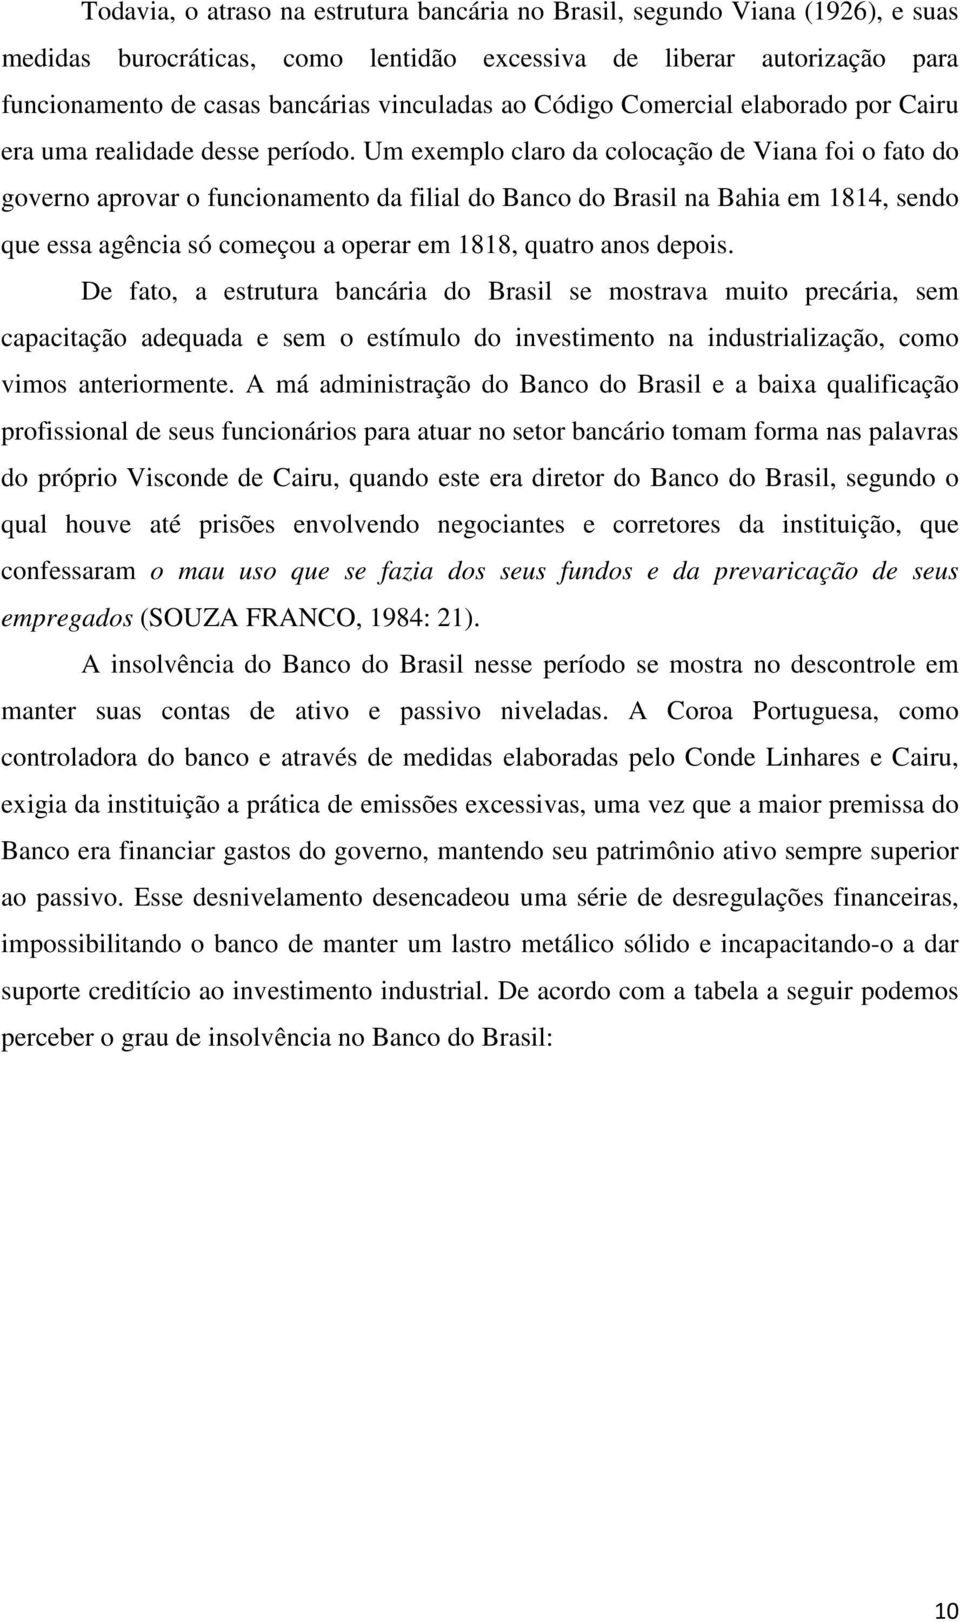 Um exemplo claro da colocação de Viana foi o fato do governo aprovar o funcionamento da filial do Banco do Brasil na Bahia em 1814, sendo que essa agência só começou a operar em 1818, quatro anos